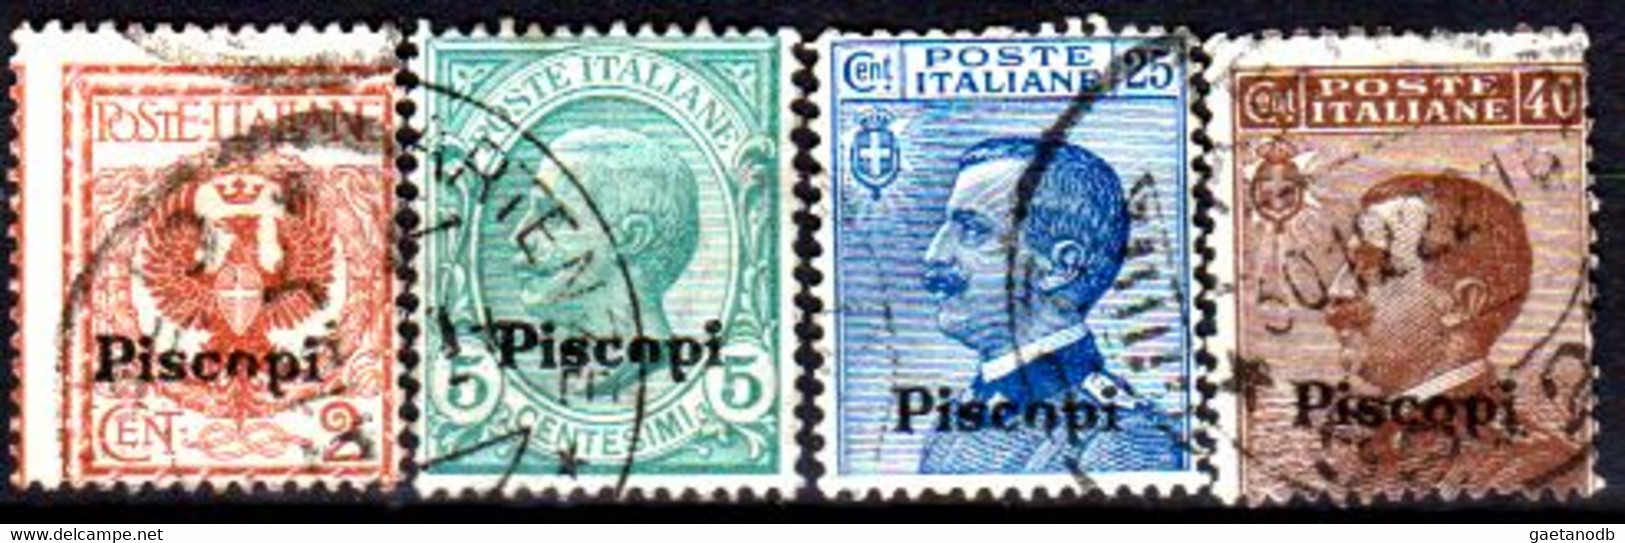 Italia-G 1125 - Colonie Italiane - Egeo: Piscopi 1912 (o) Used - Qualità A Vostro Giudizio. - Aegean (Piscopi)